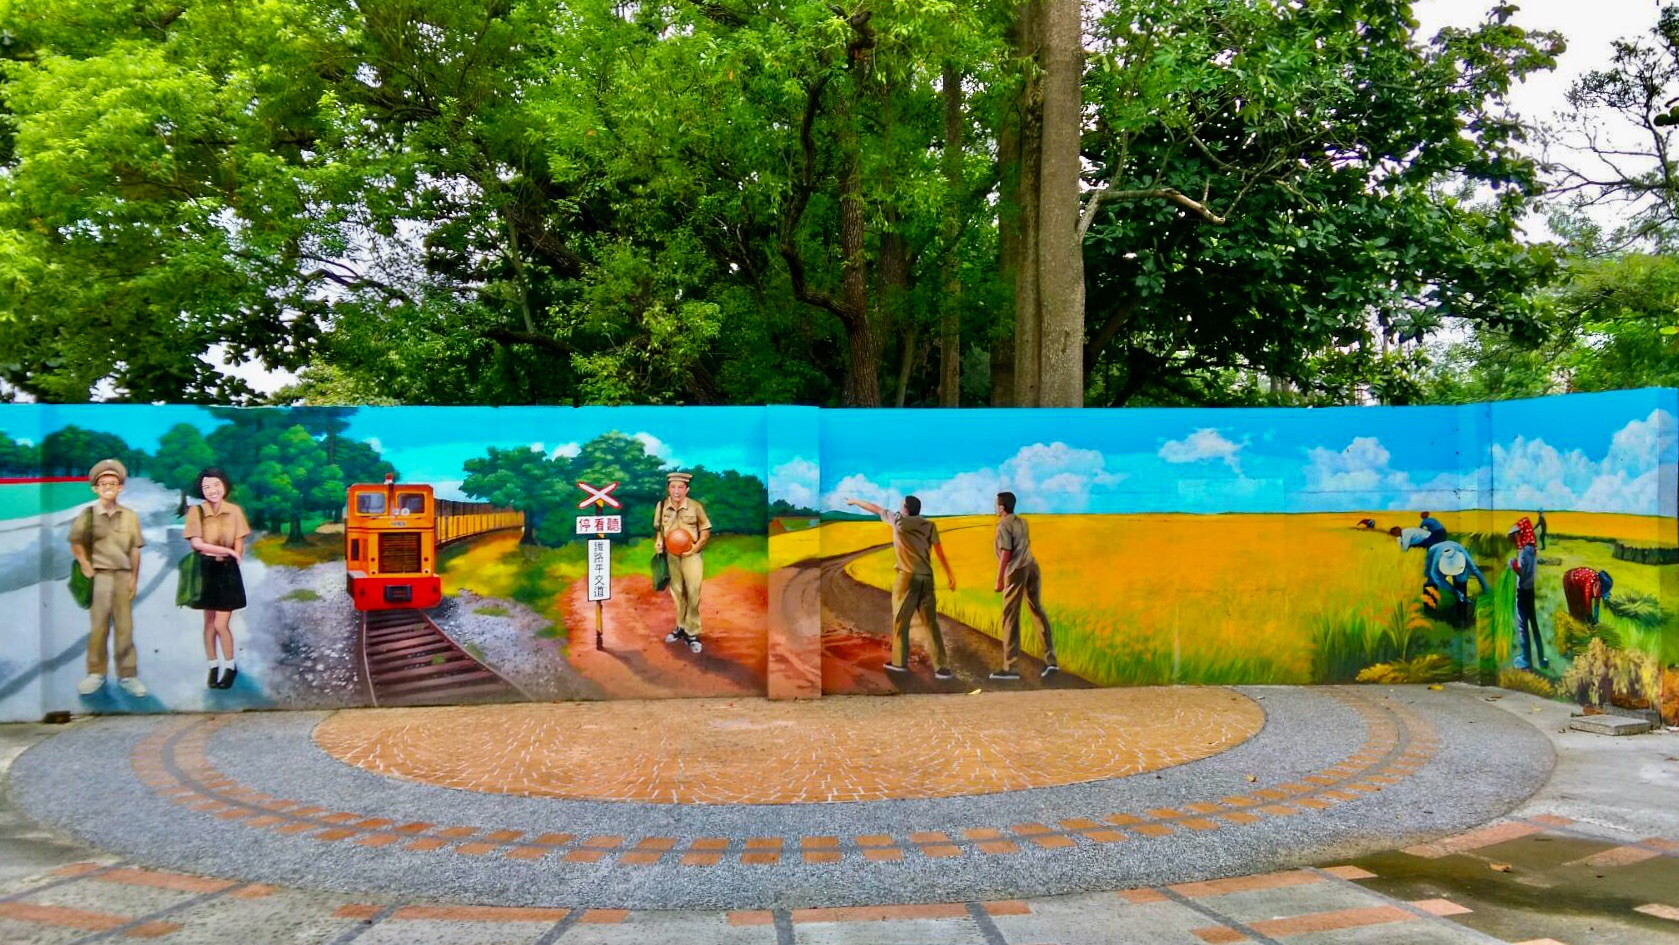 臺糖鐵路壁面3D意象創意彩繪